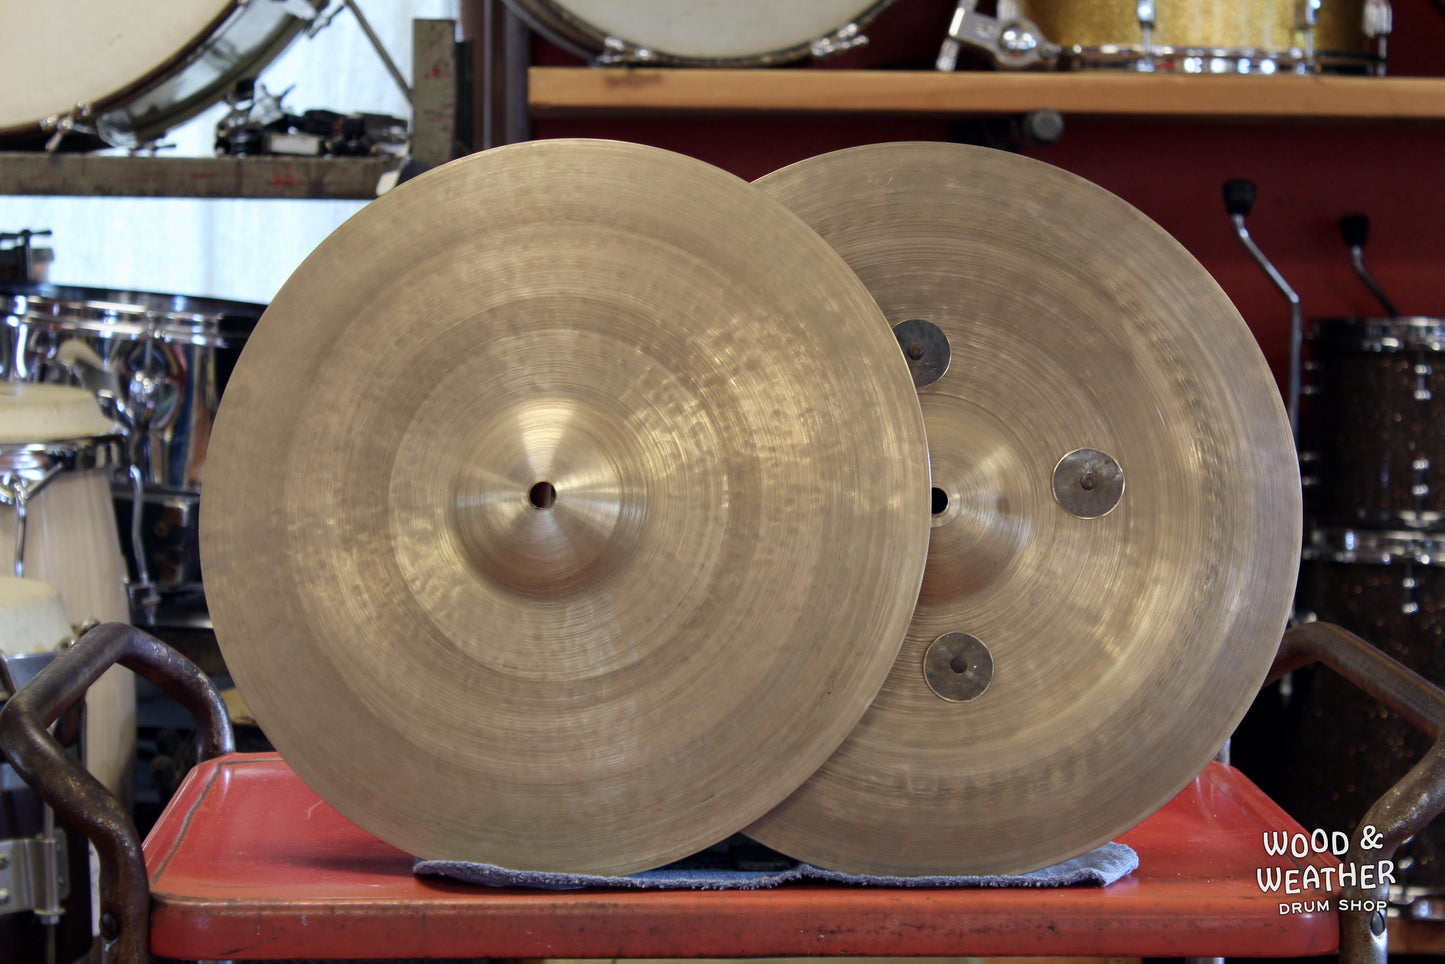 PGB Artisan Cymbals 14" Inverted China Hi-Hat Cymbals 780/1020g